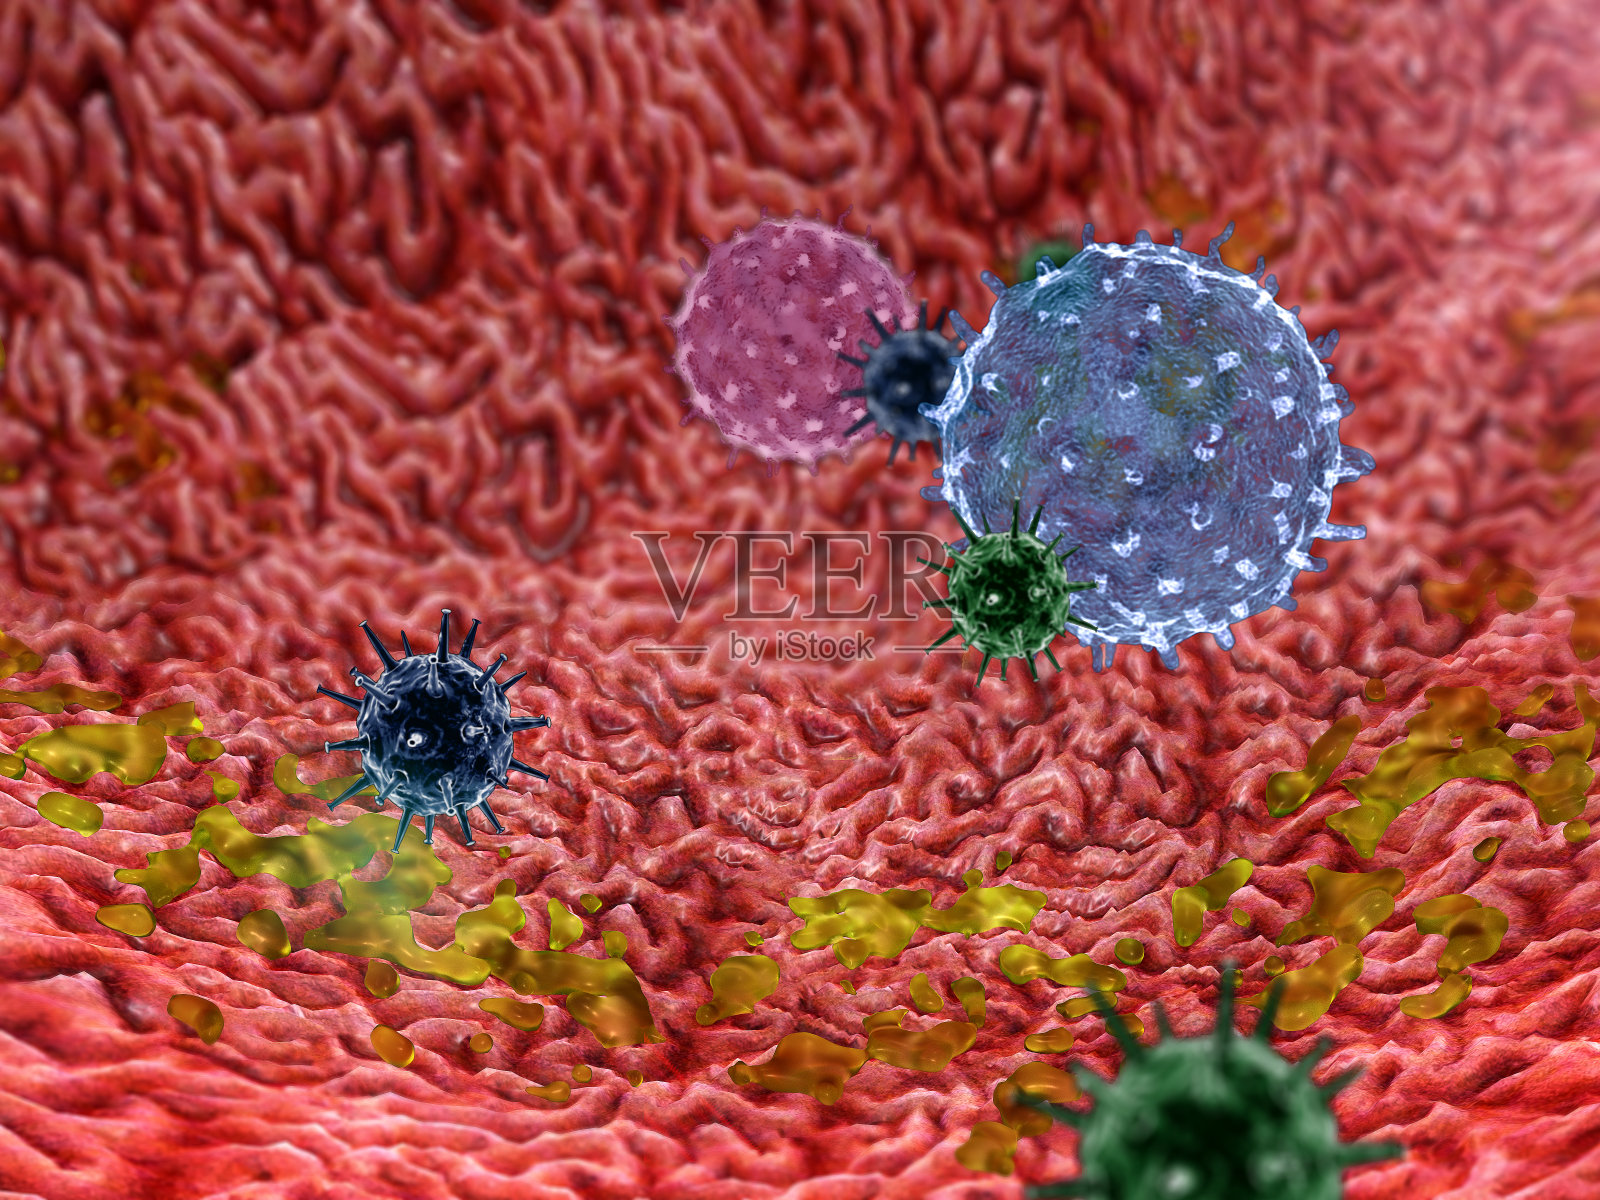 巨细胞病毒图片高清图片